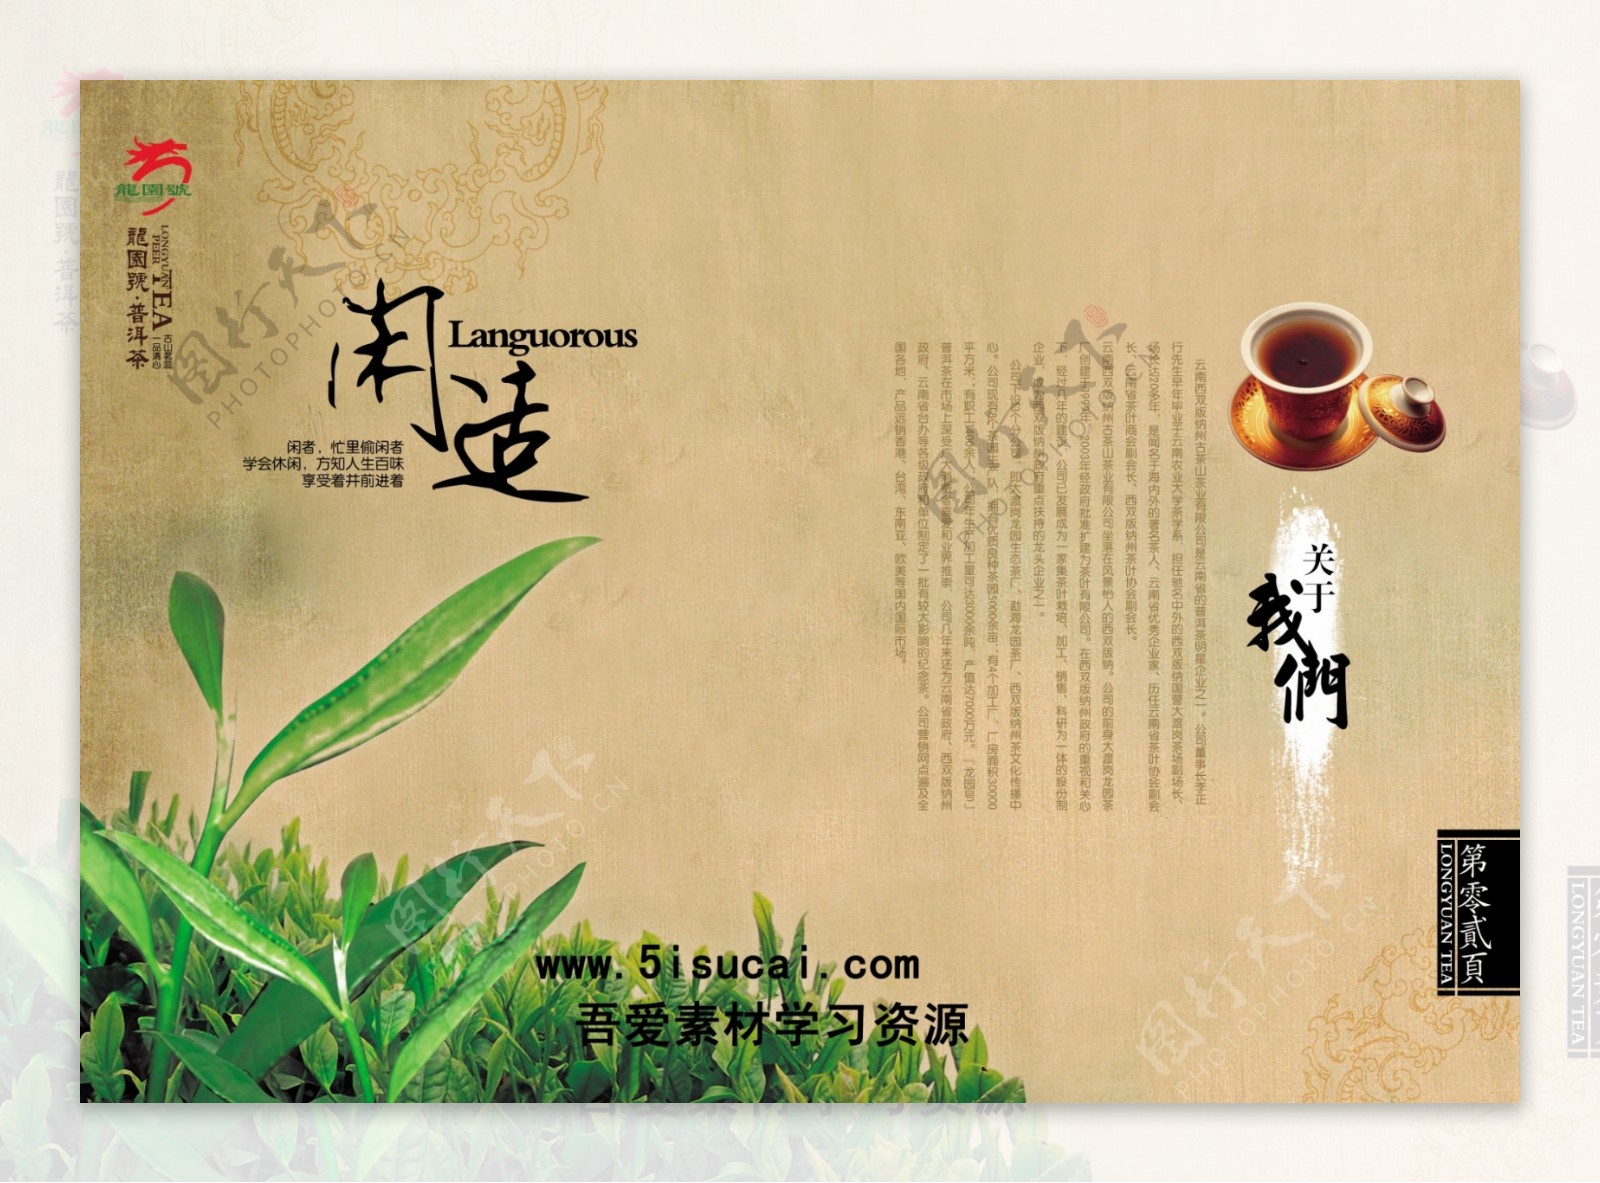 茶叶宣传海报模板